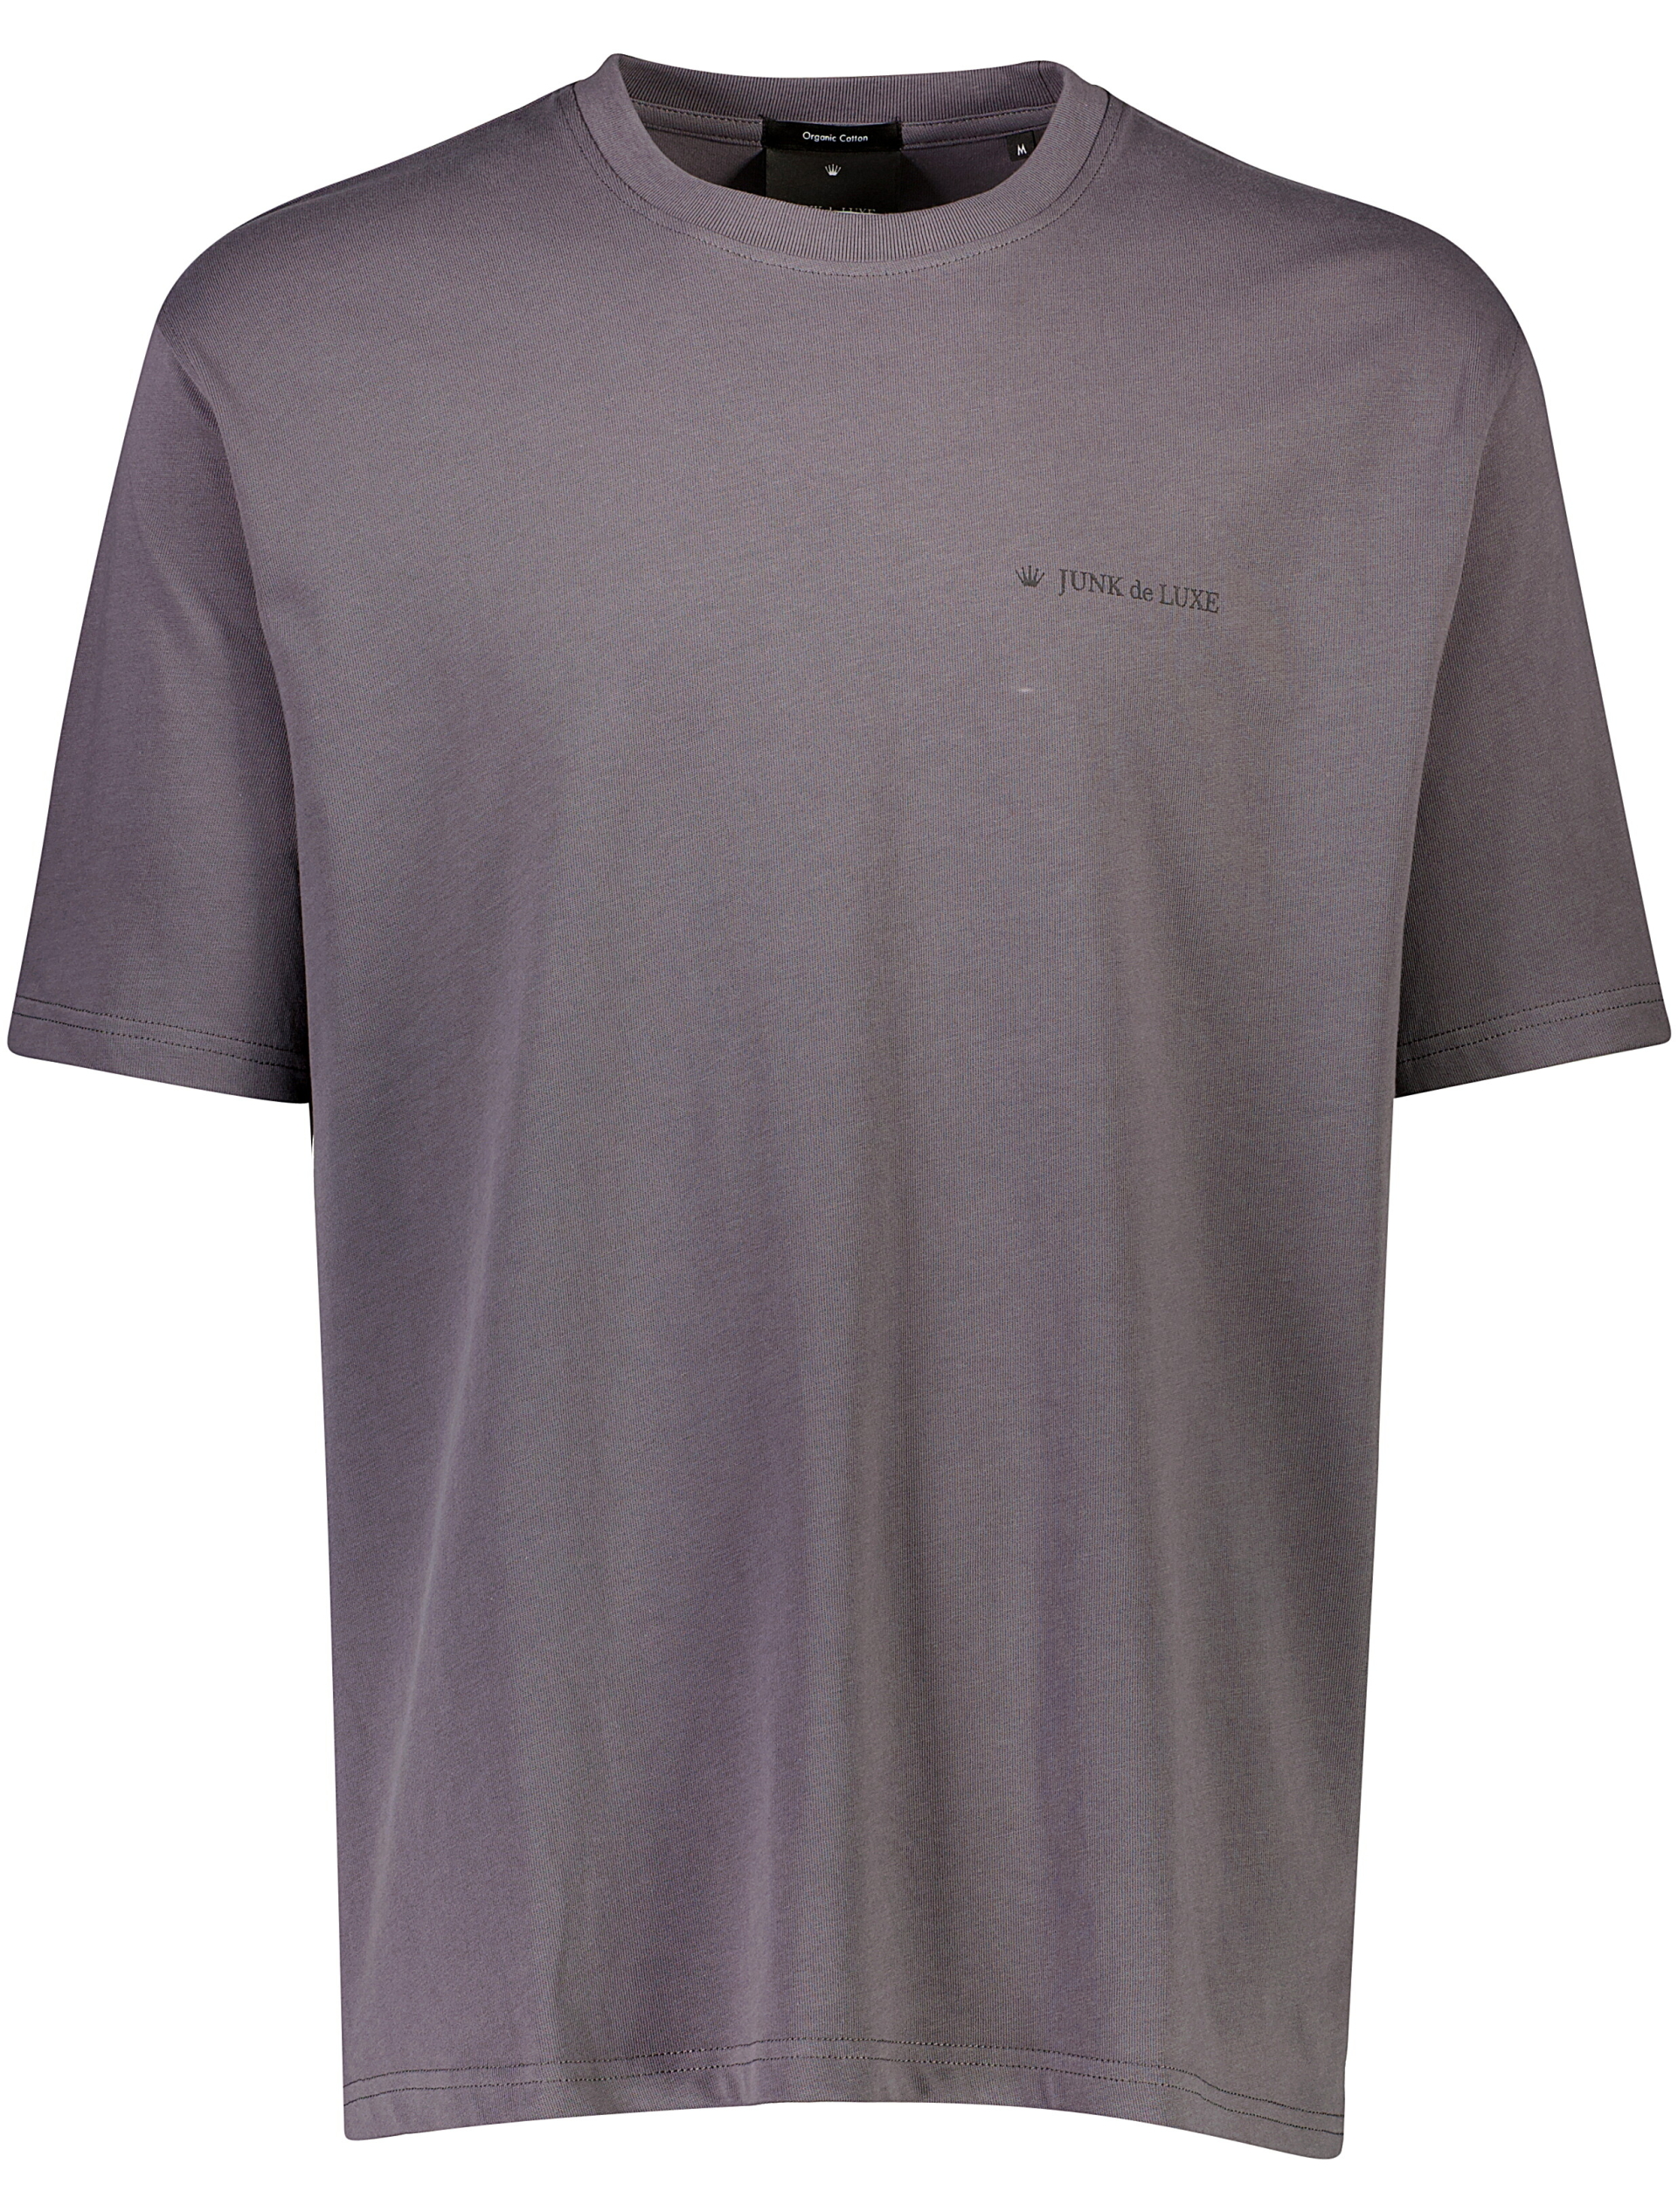 Junk de Luxe T-shirt grå / iron grey